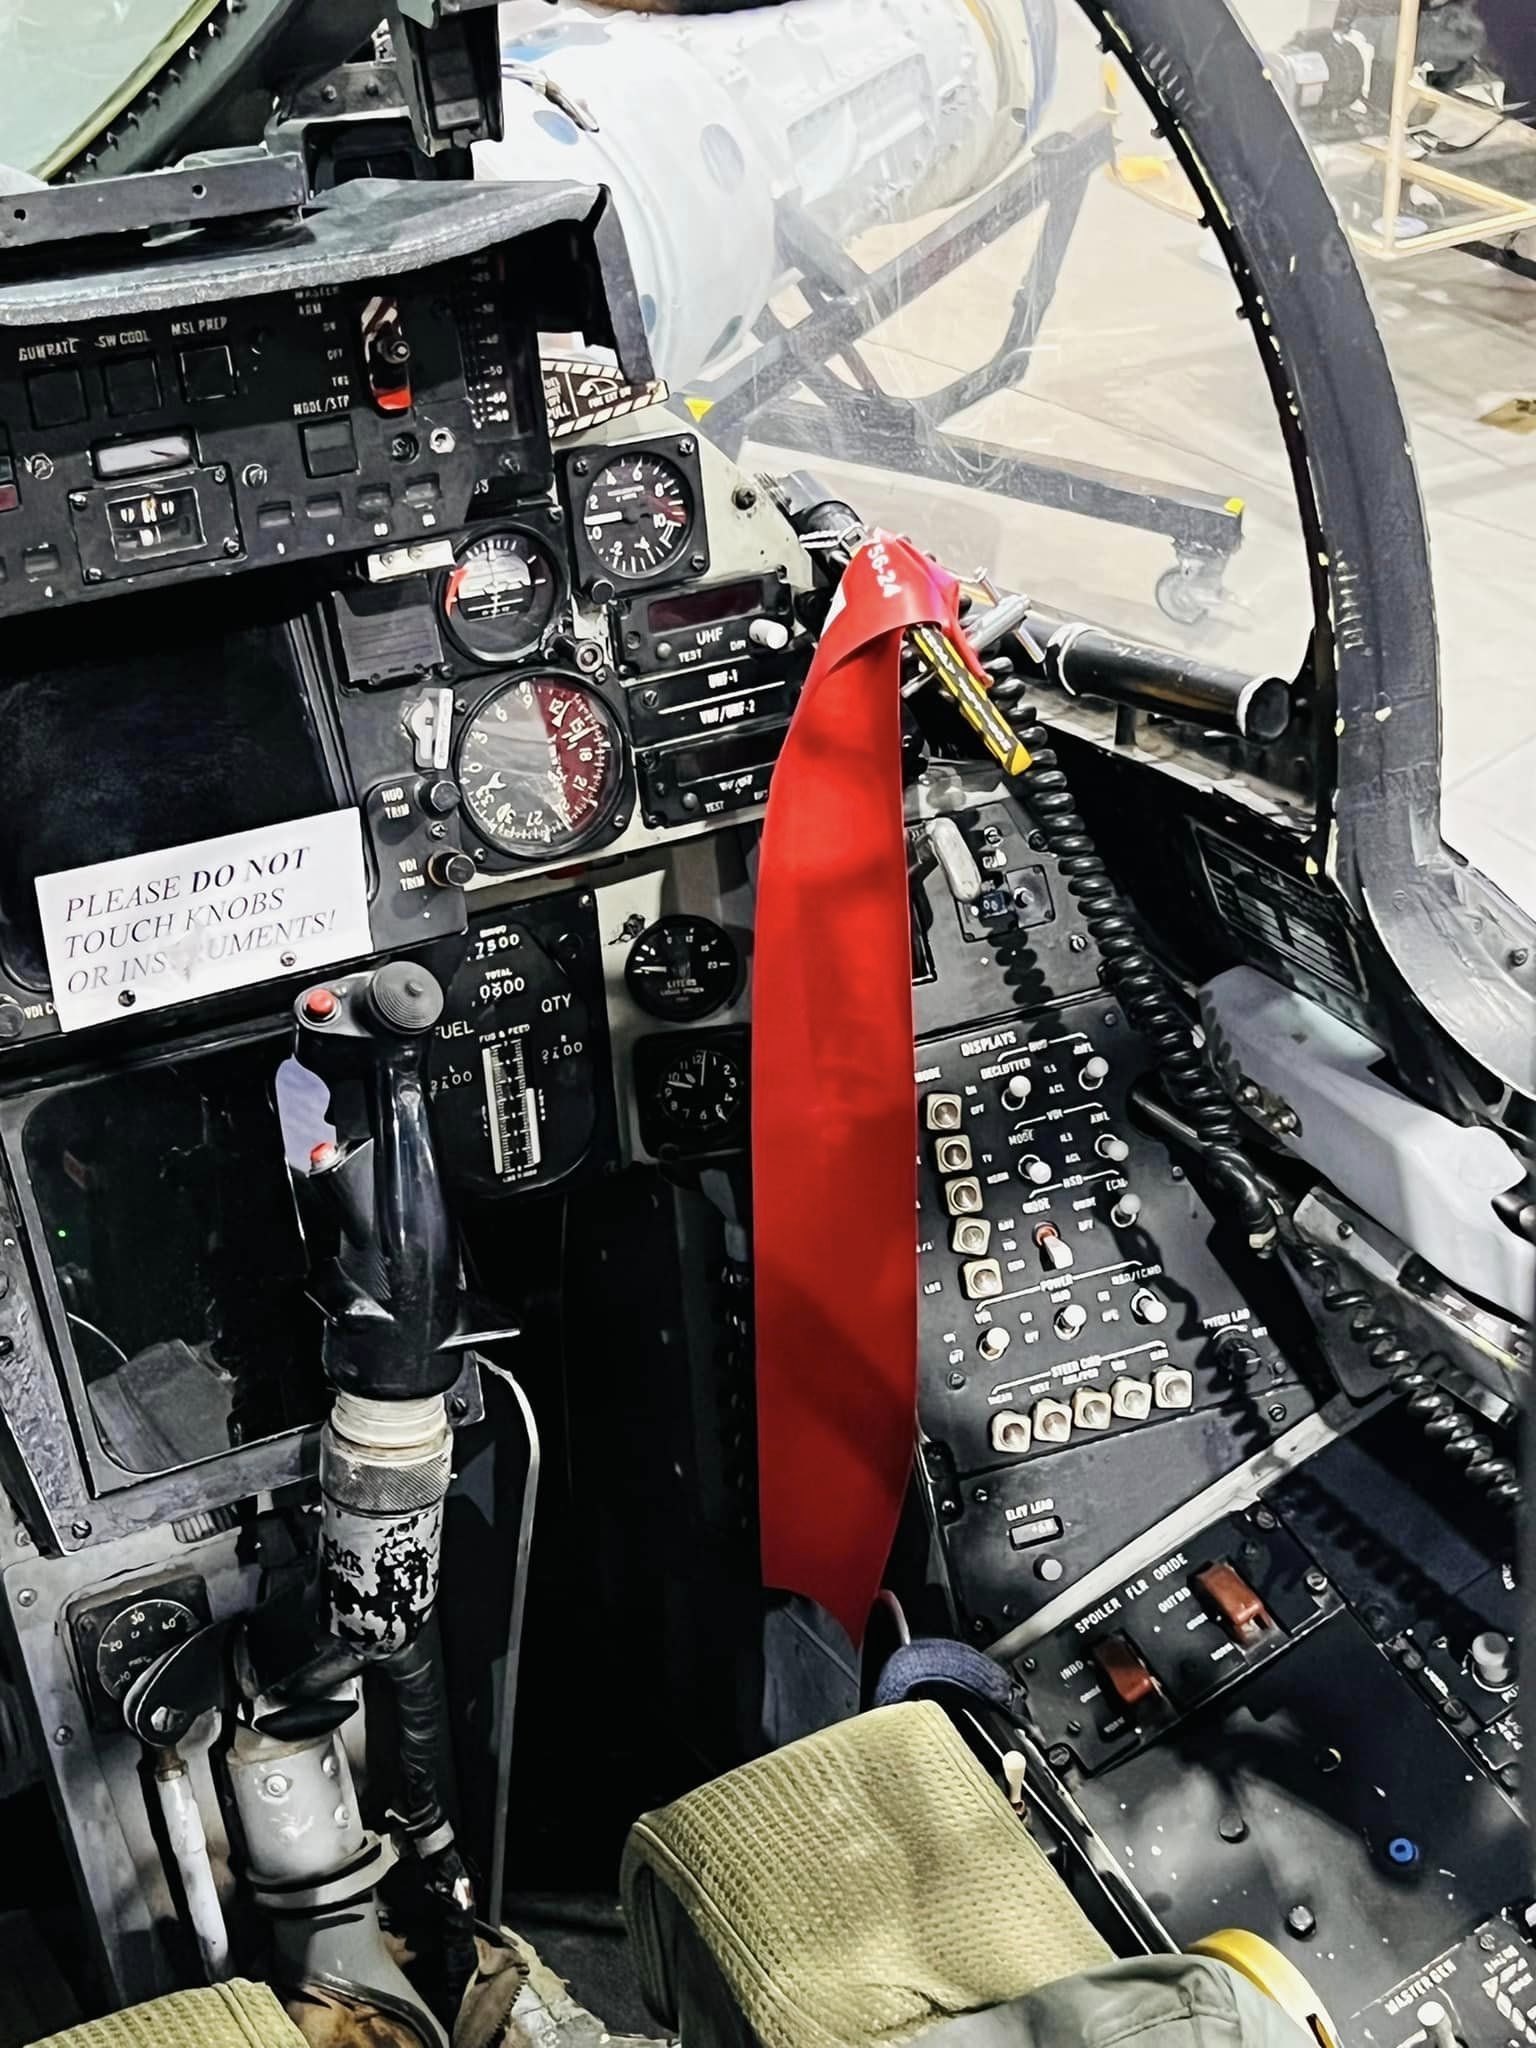 战斗机驾驶舱视角图片